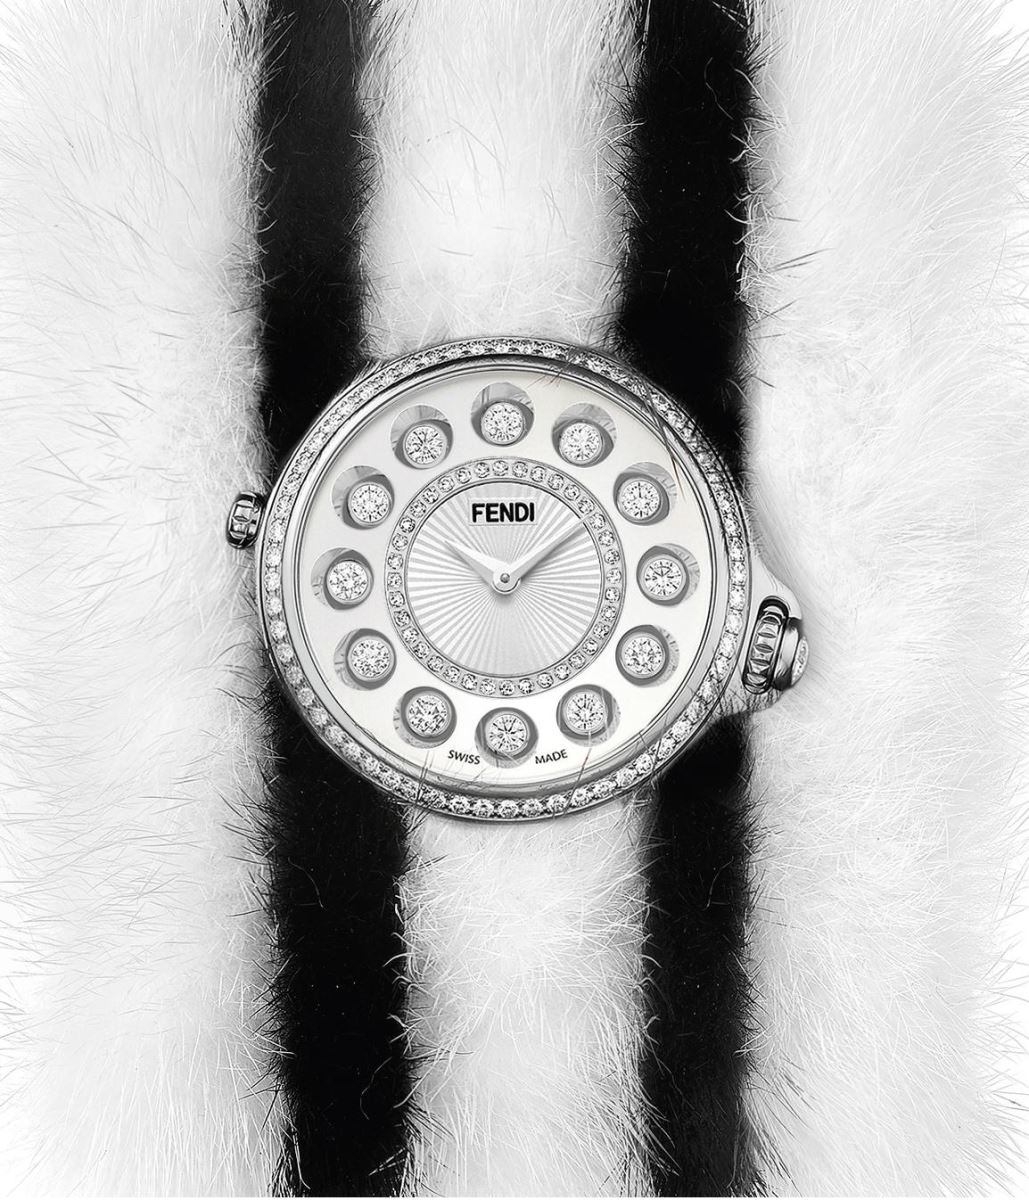 đồng hồ nữ kim cương Fendi thời trang cao cấp